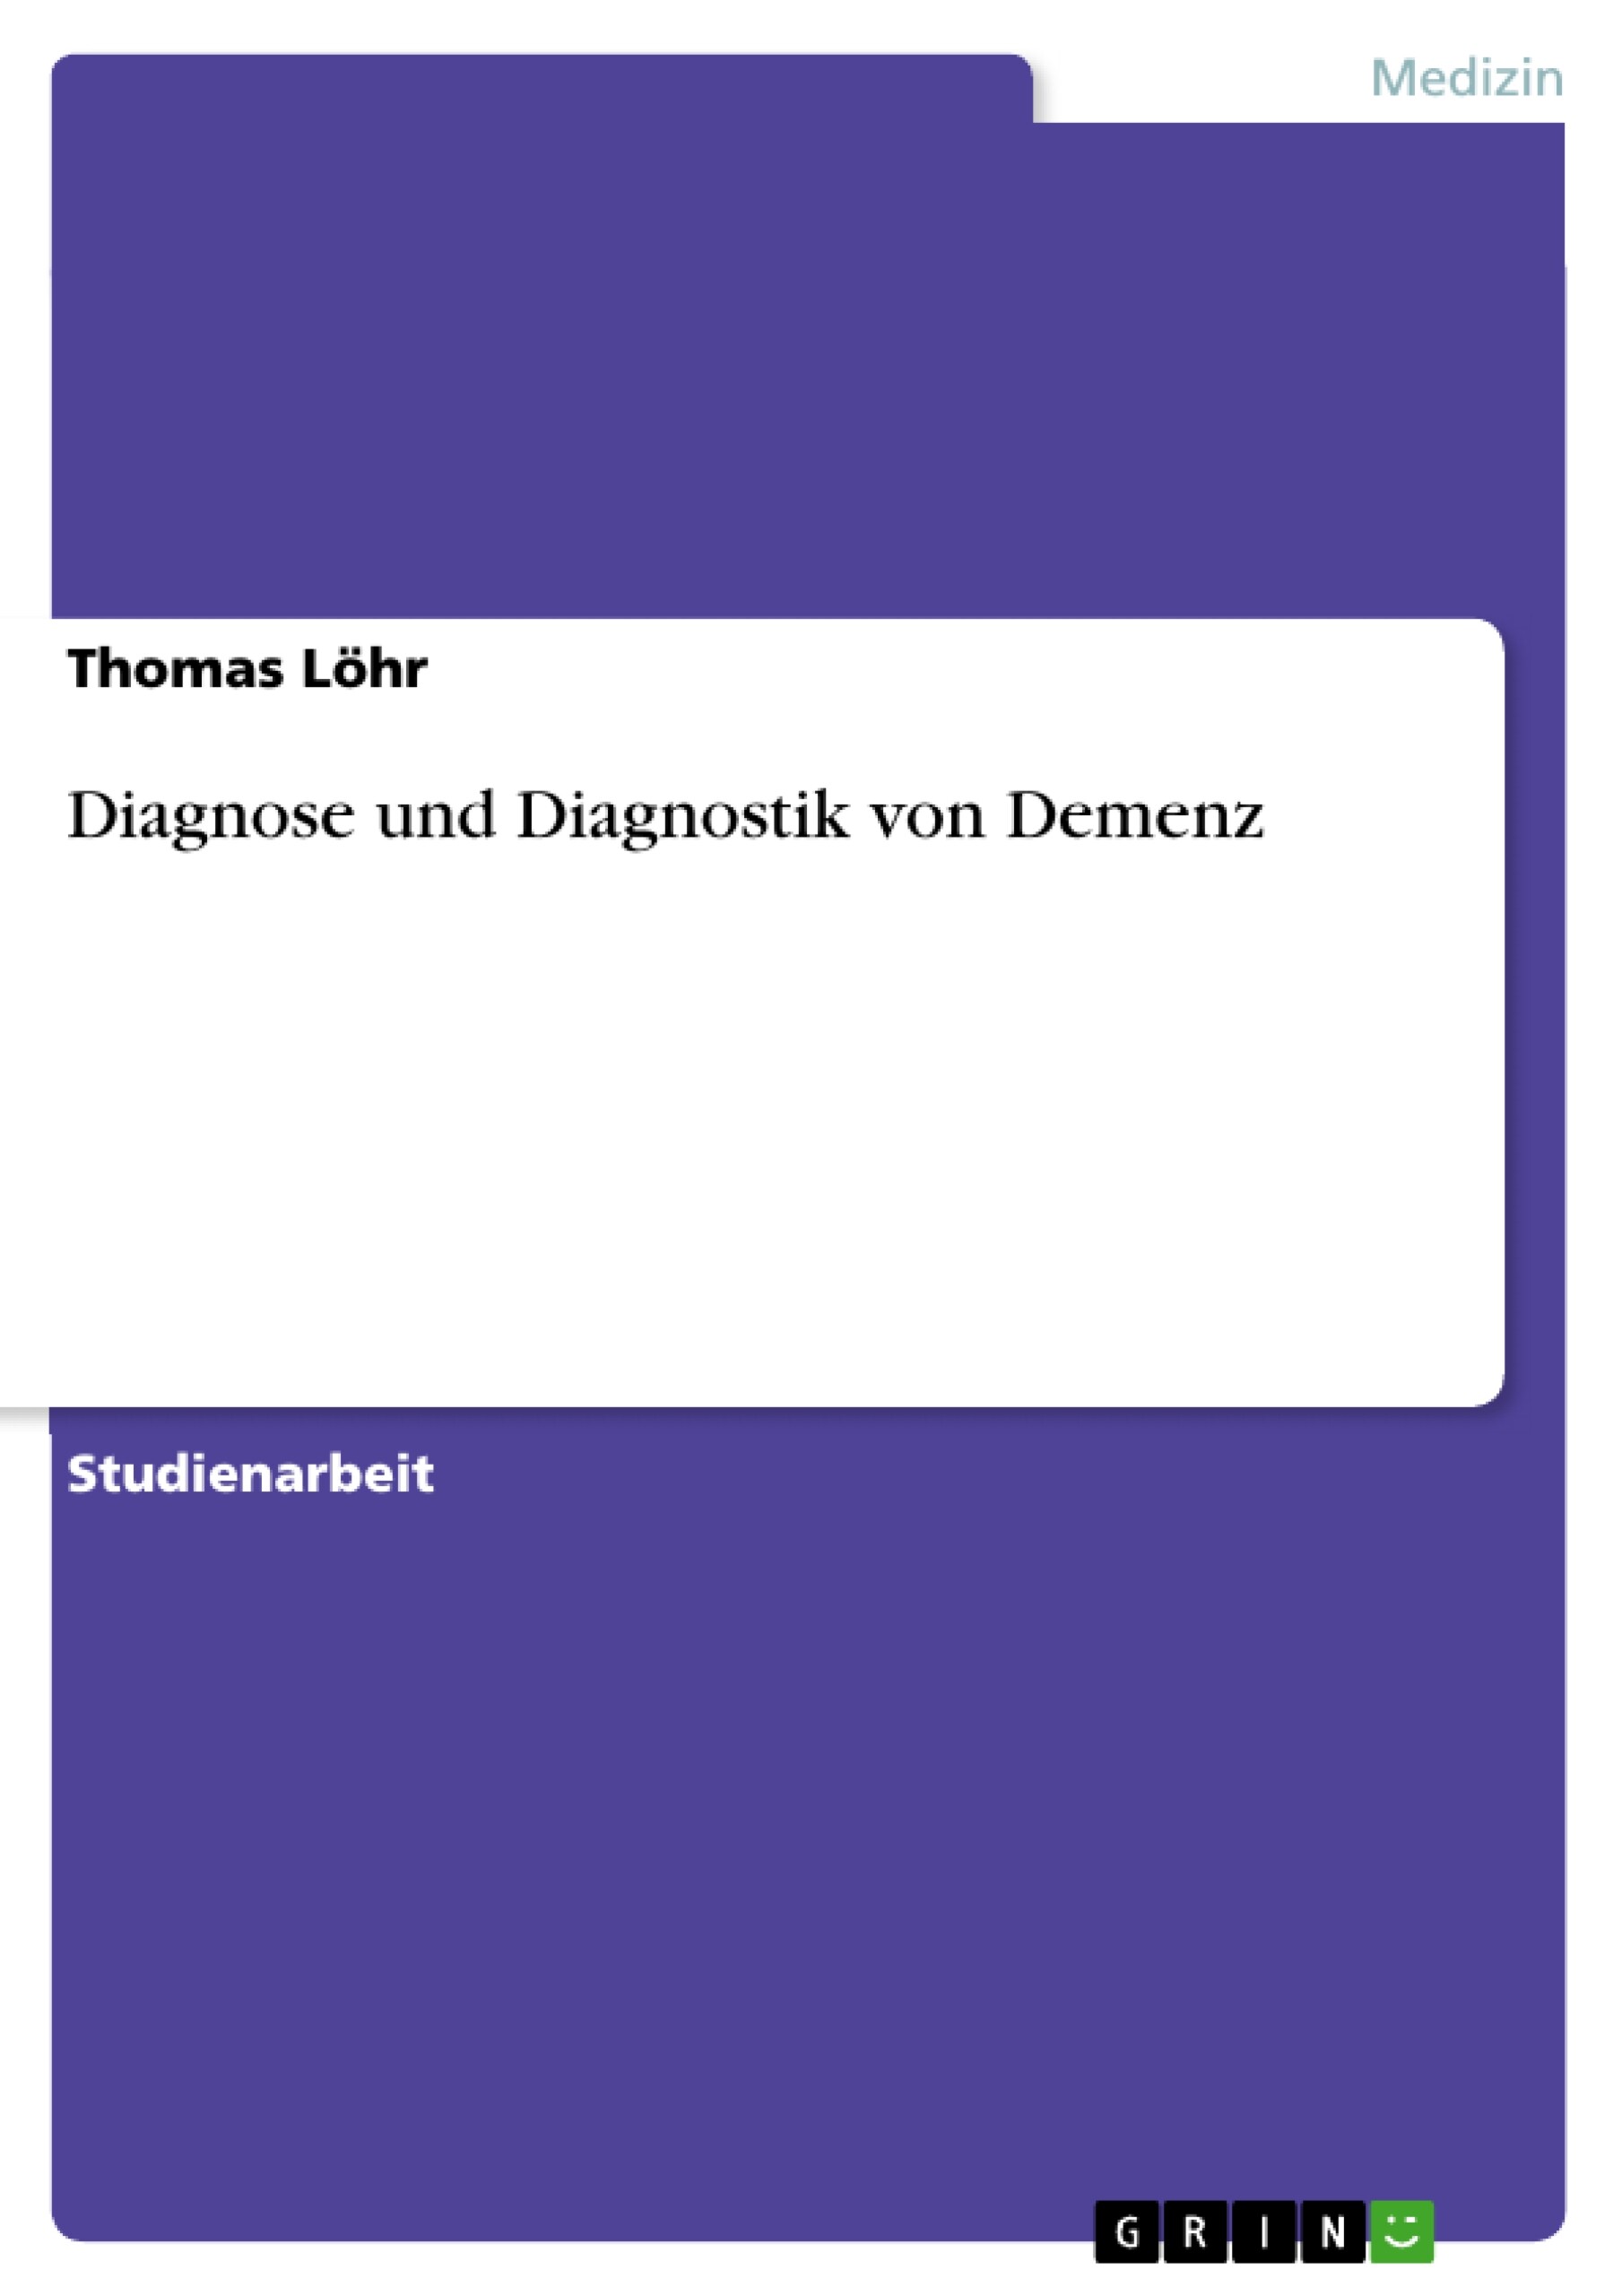 Diagnose und Diagnostik von Demenz